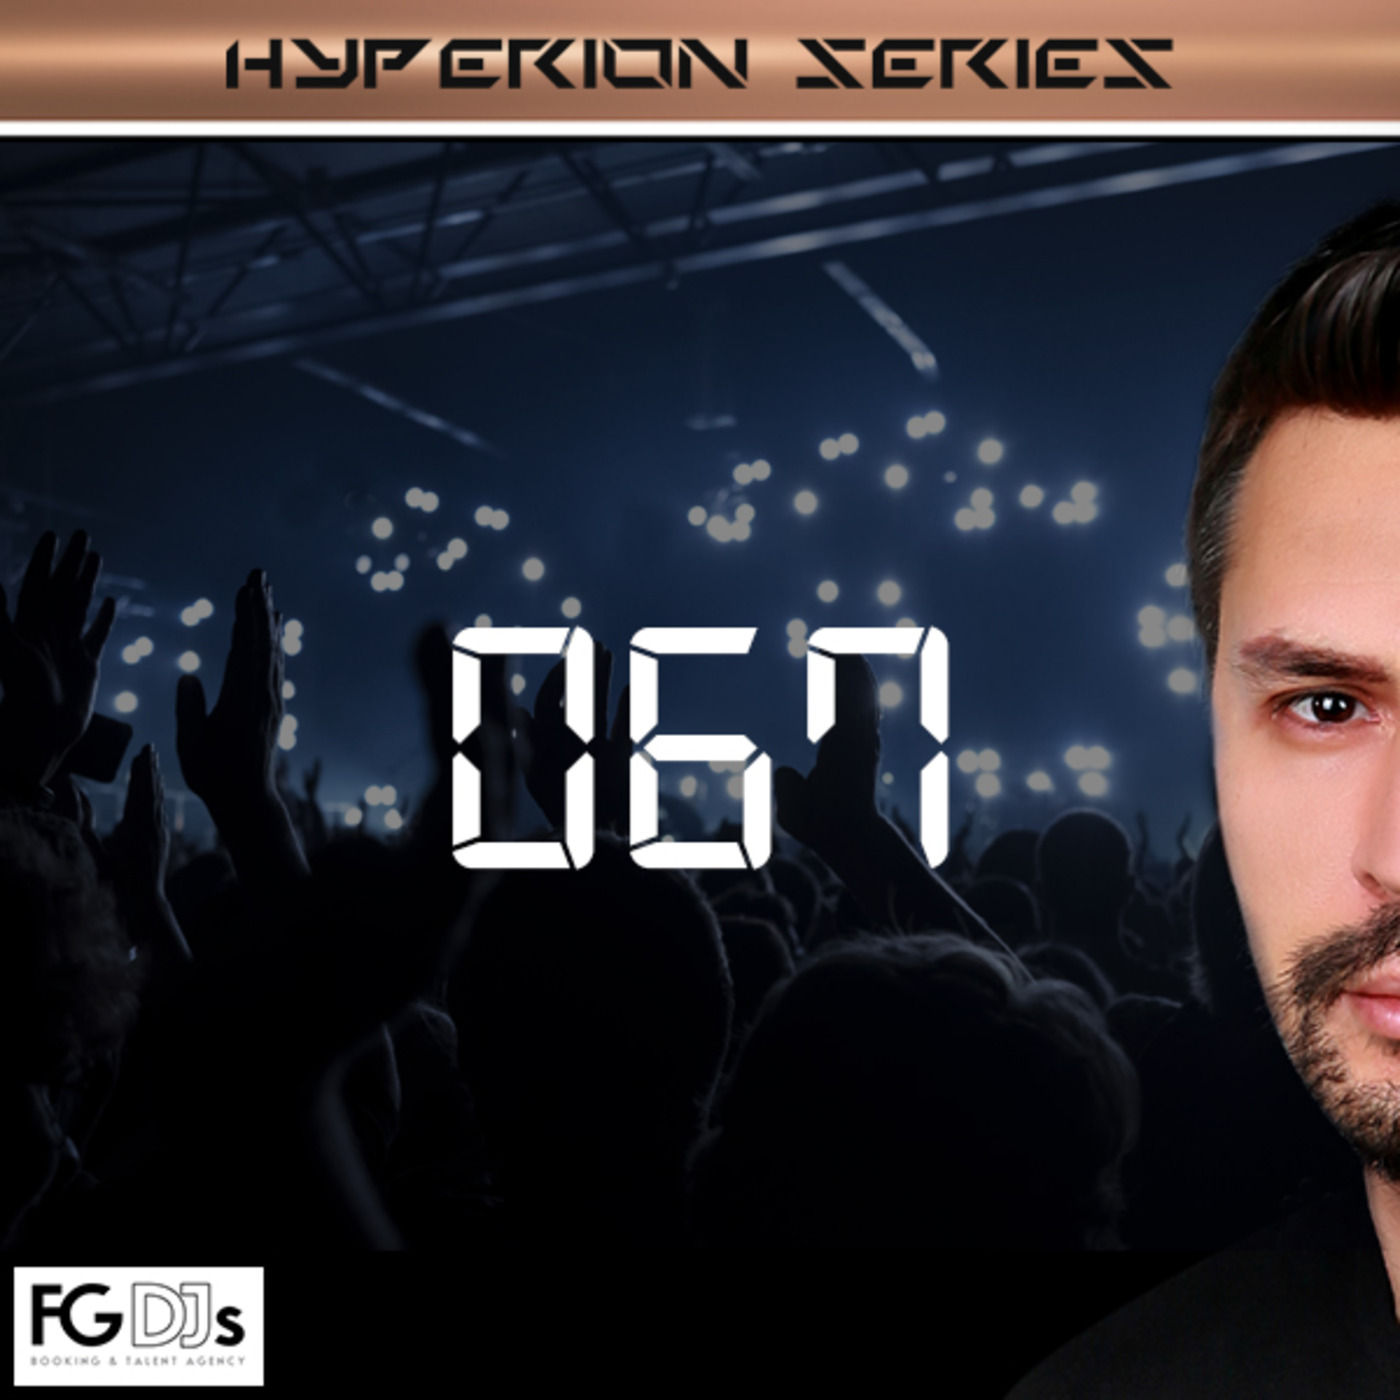 Radio FG 93.7 Live (10.01.2018) Cem Ozturk Techno Feast "HYPERION" Episode 067